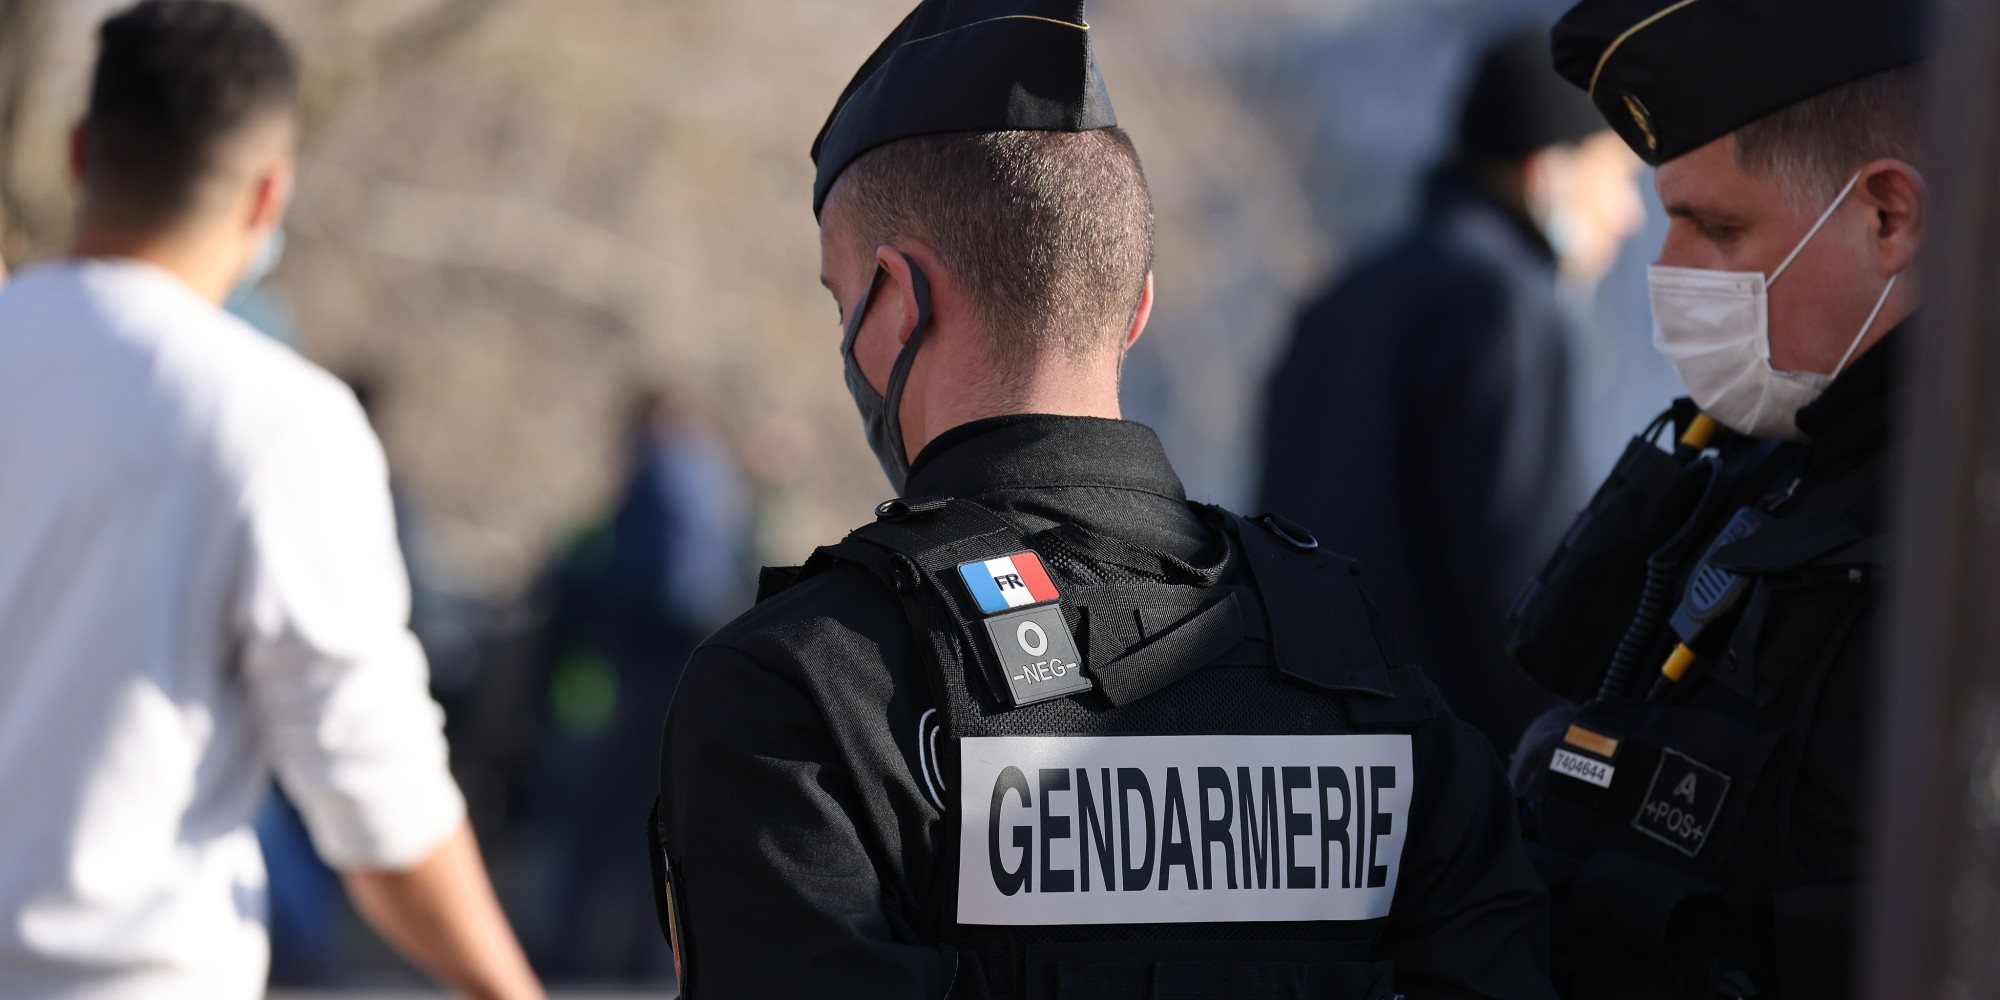 Image de 2 gendarmes de dos